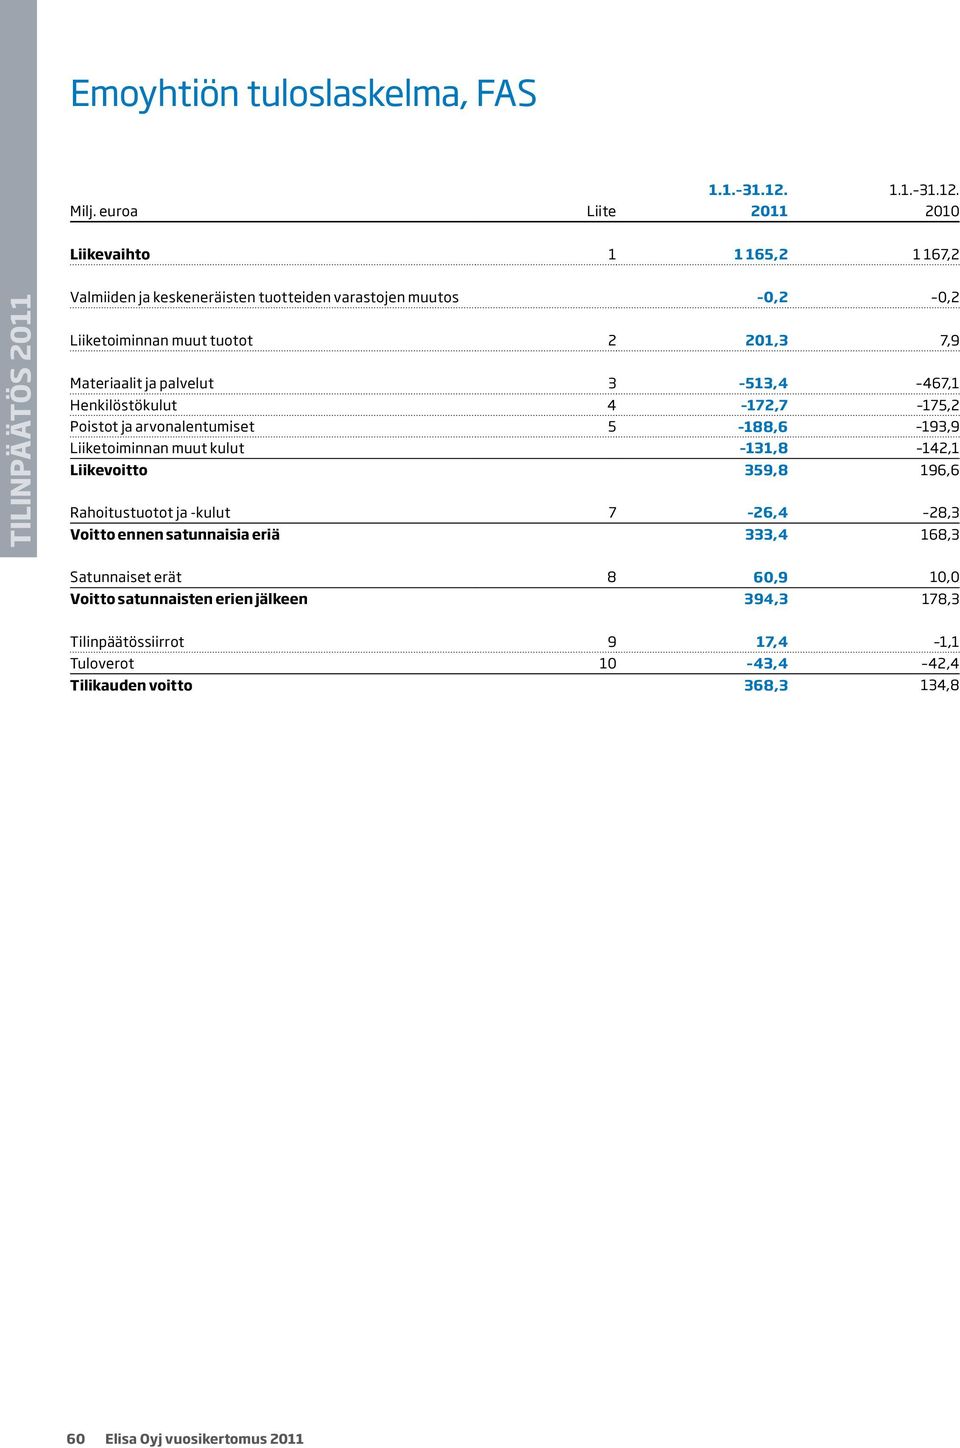 Liite 2011 2010 Liikevaihto 1 1 165,2 1 167,2 Valmiiden ja keskeneräisten tuotteiden varastojen muutos 0,2 0,2 Liiketoiminnan muut tuotot 2 201,3 7,9